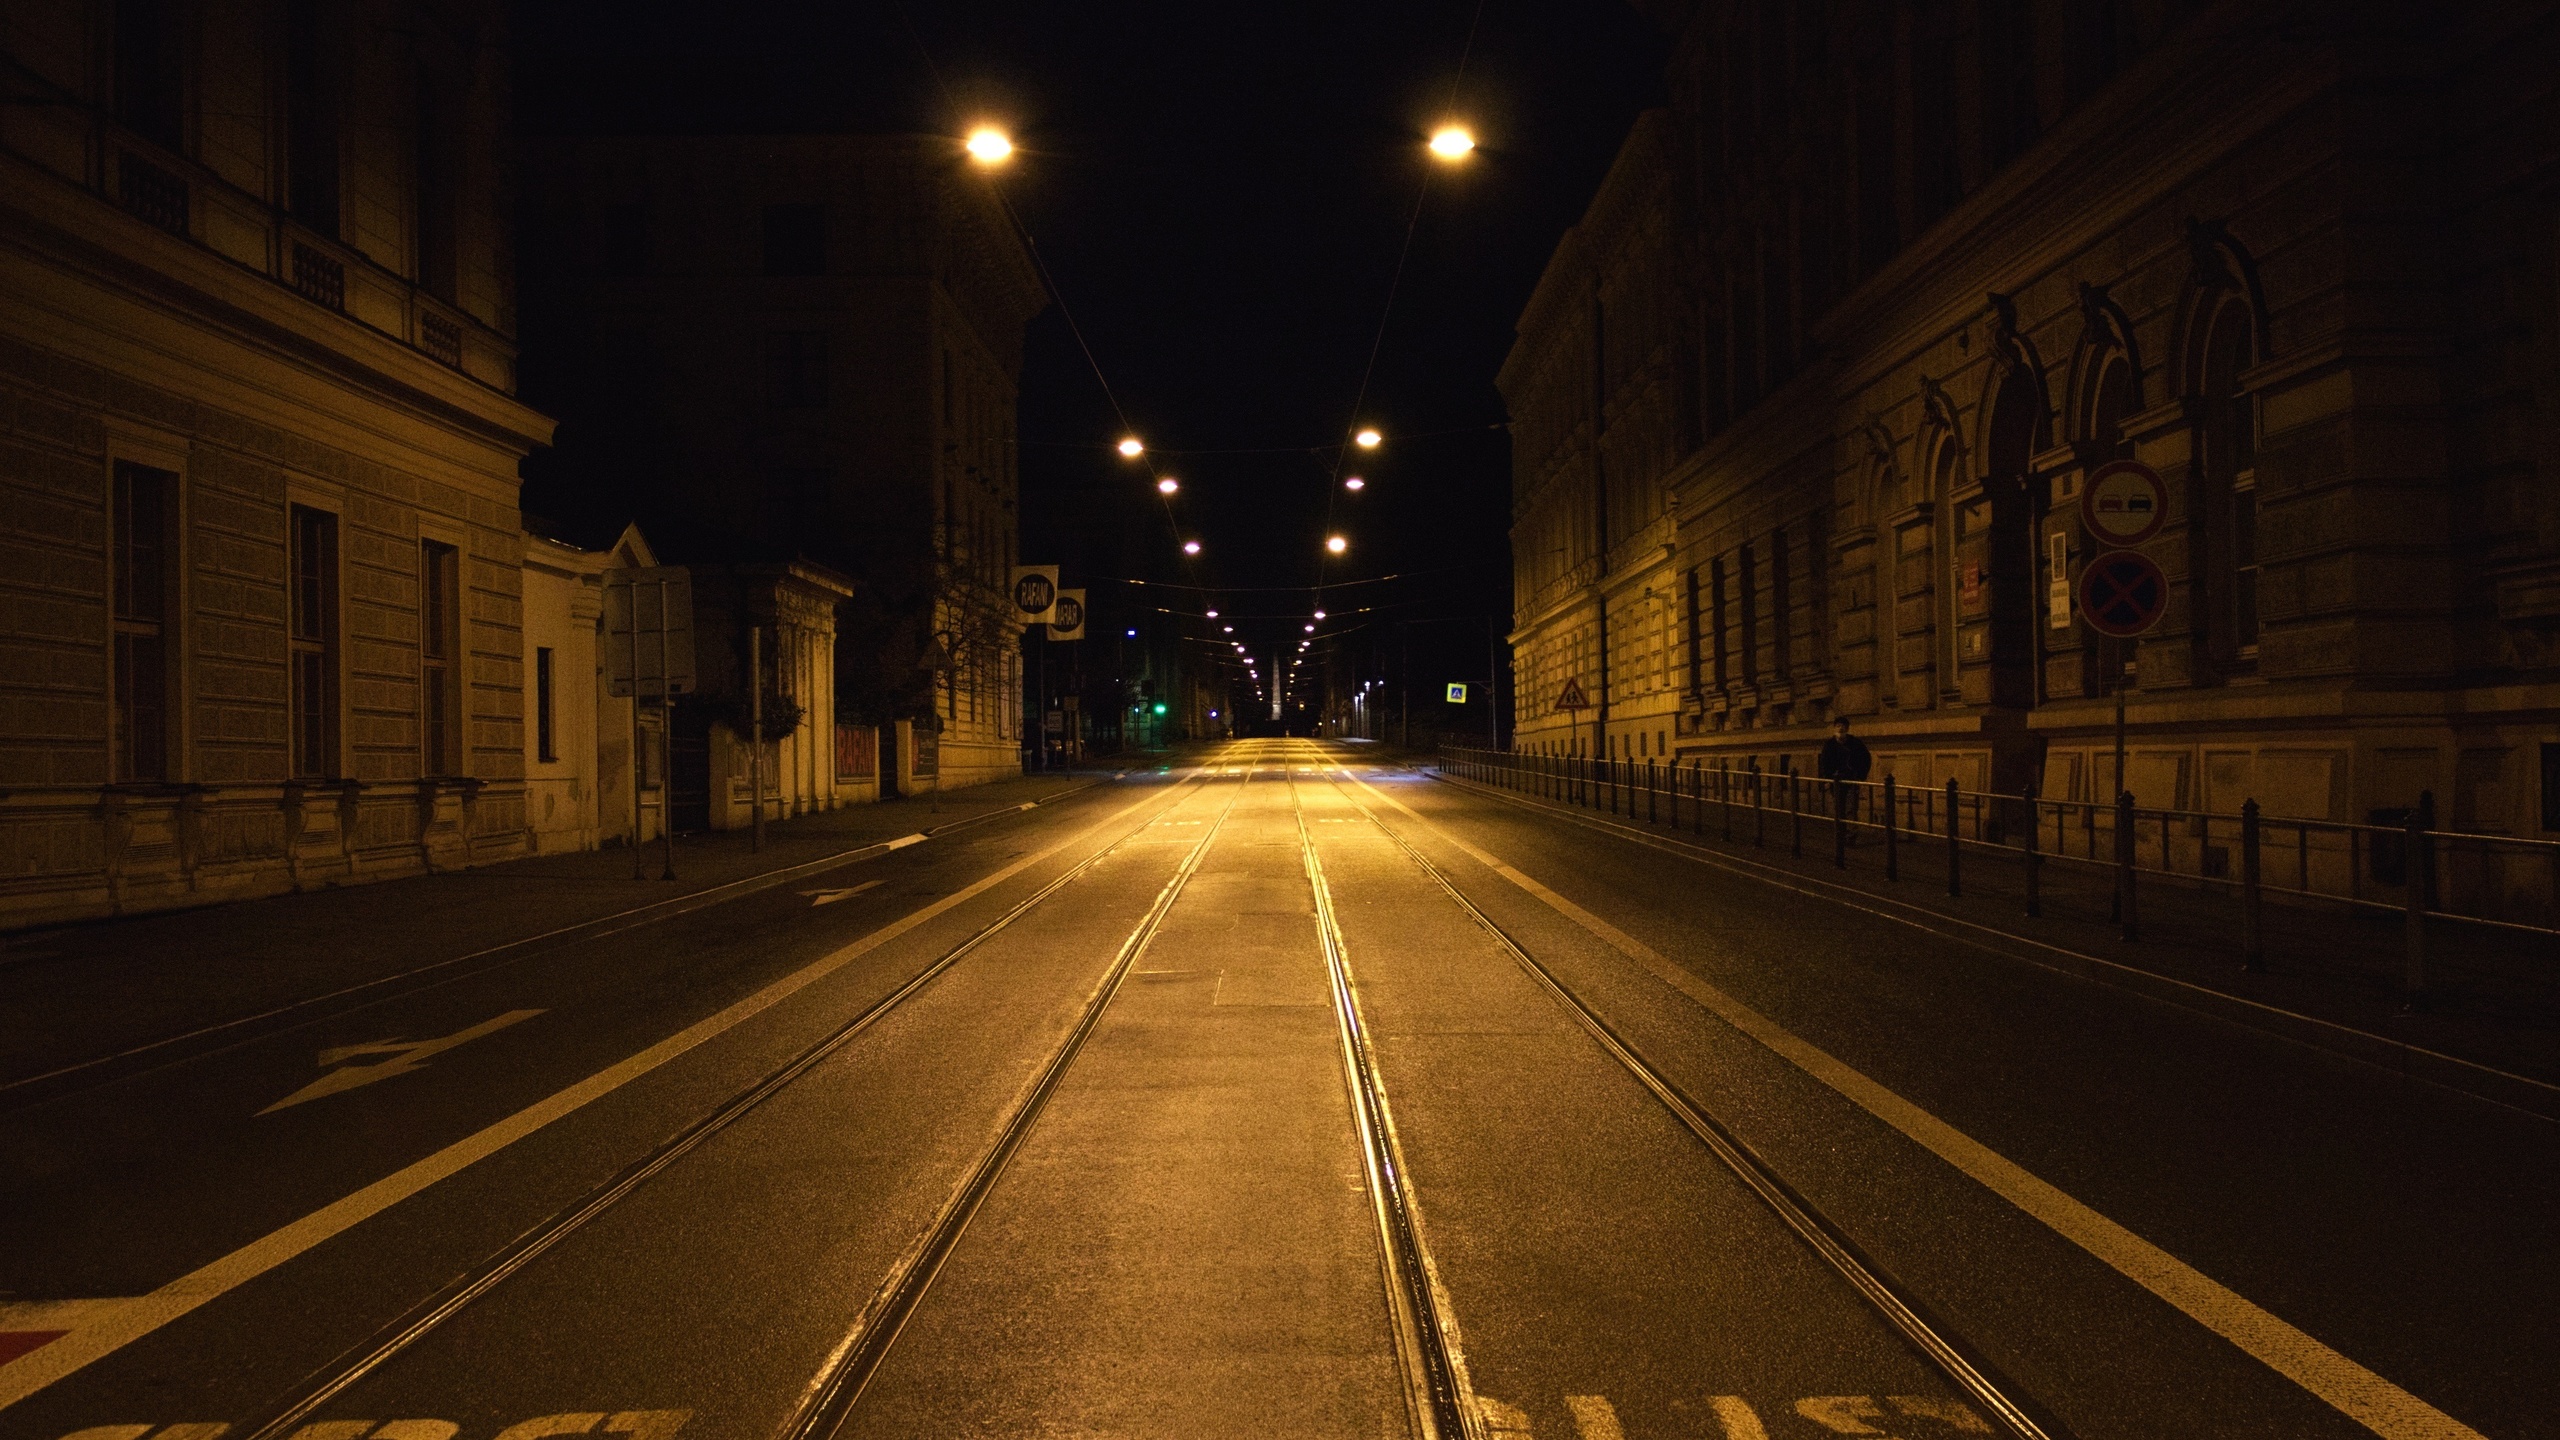 Выйти на улицу ночью 2 августа. Ночная улица. Улицы ночного города. Дорога в городе. Пустая улица ночью.